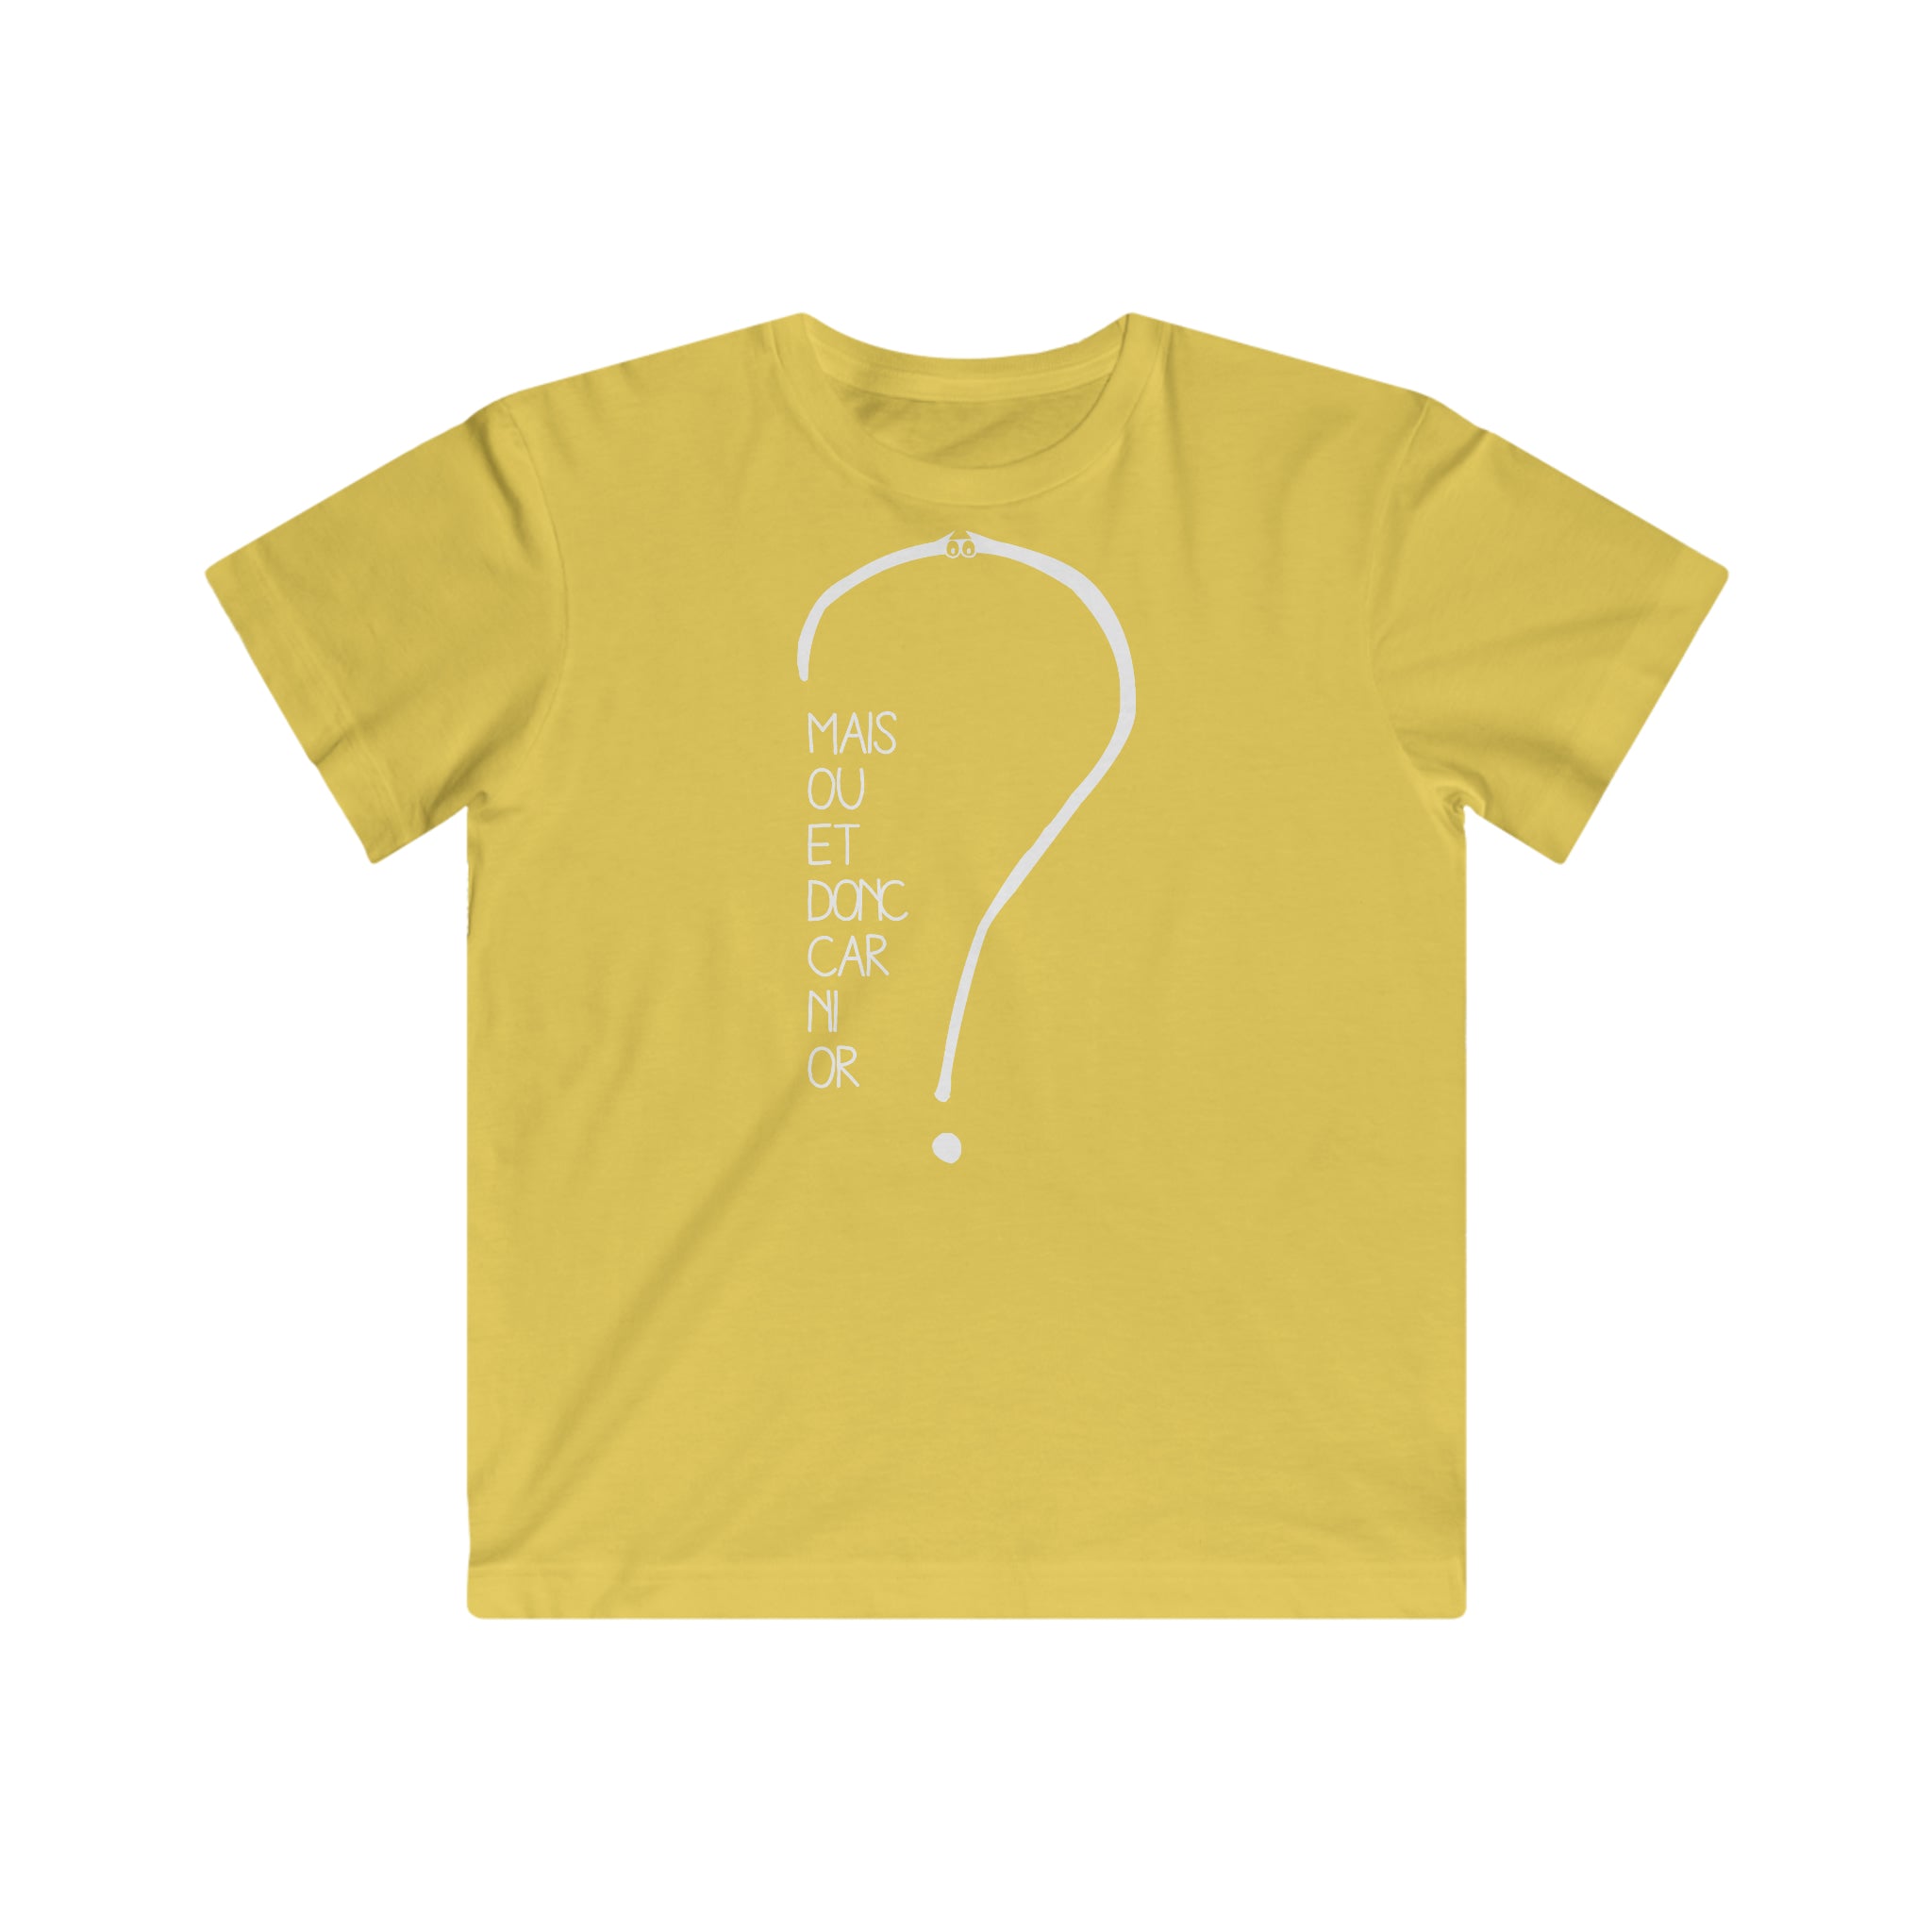 T-shirt pour enfant - Mais où et donc car ni or